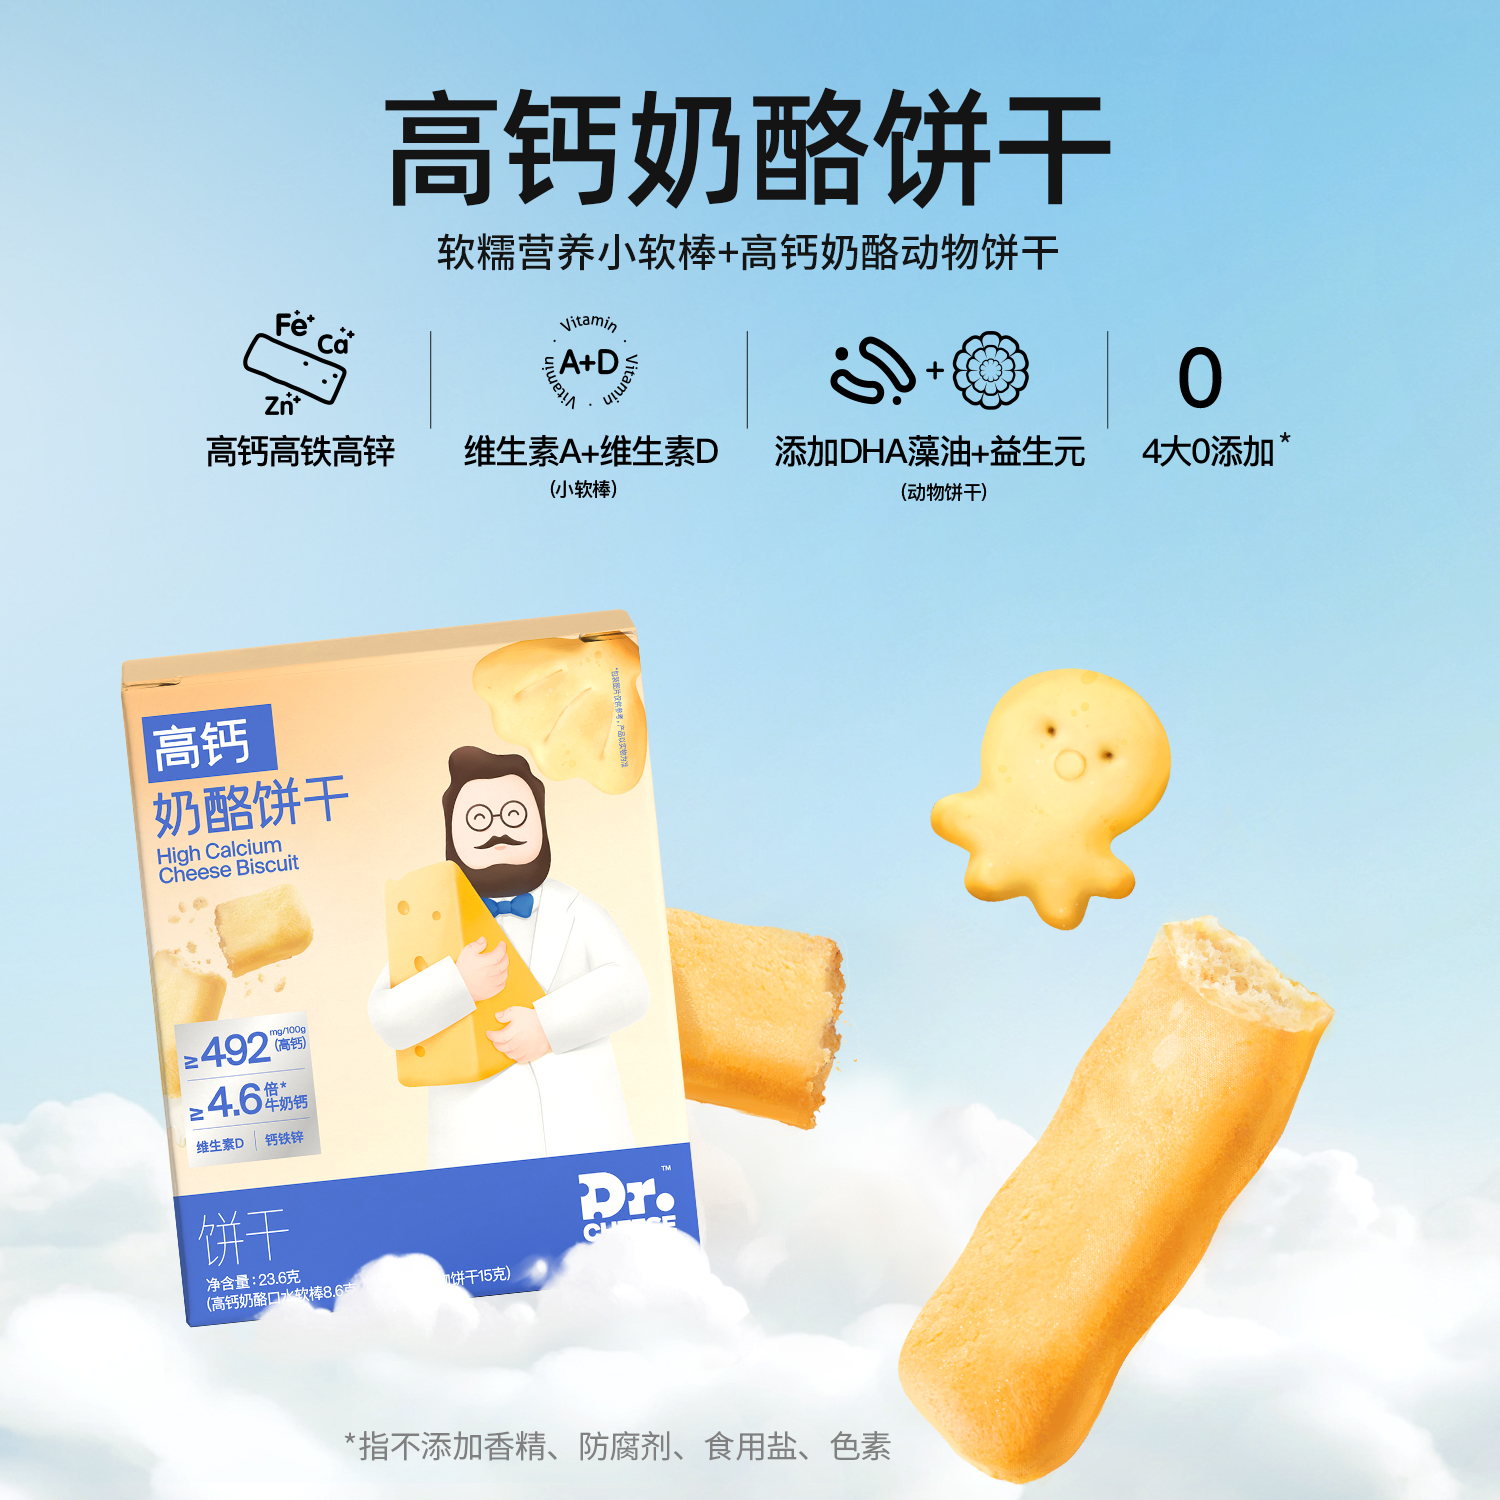 【强推荐】奶酪博士高钙奶酪动物饼干宝宝营养零食尝鲜盒